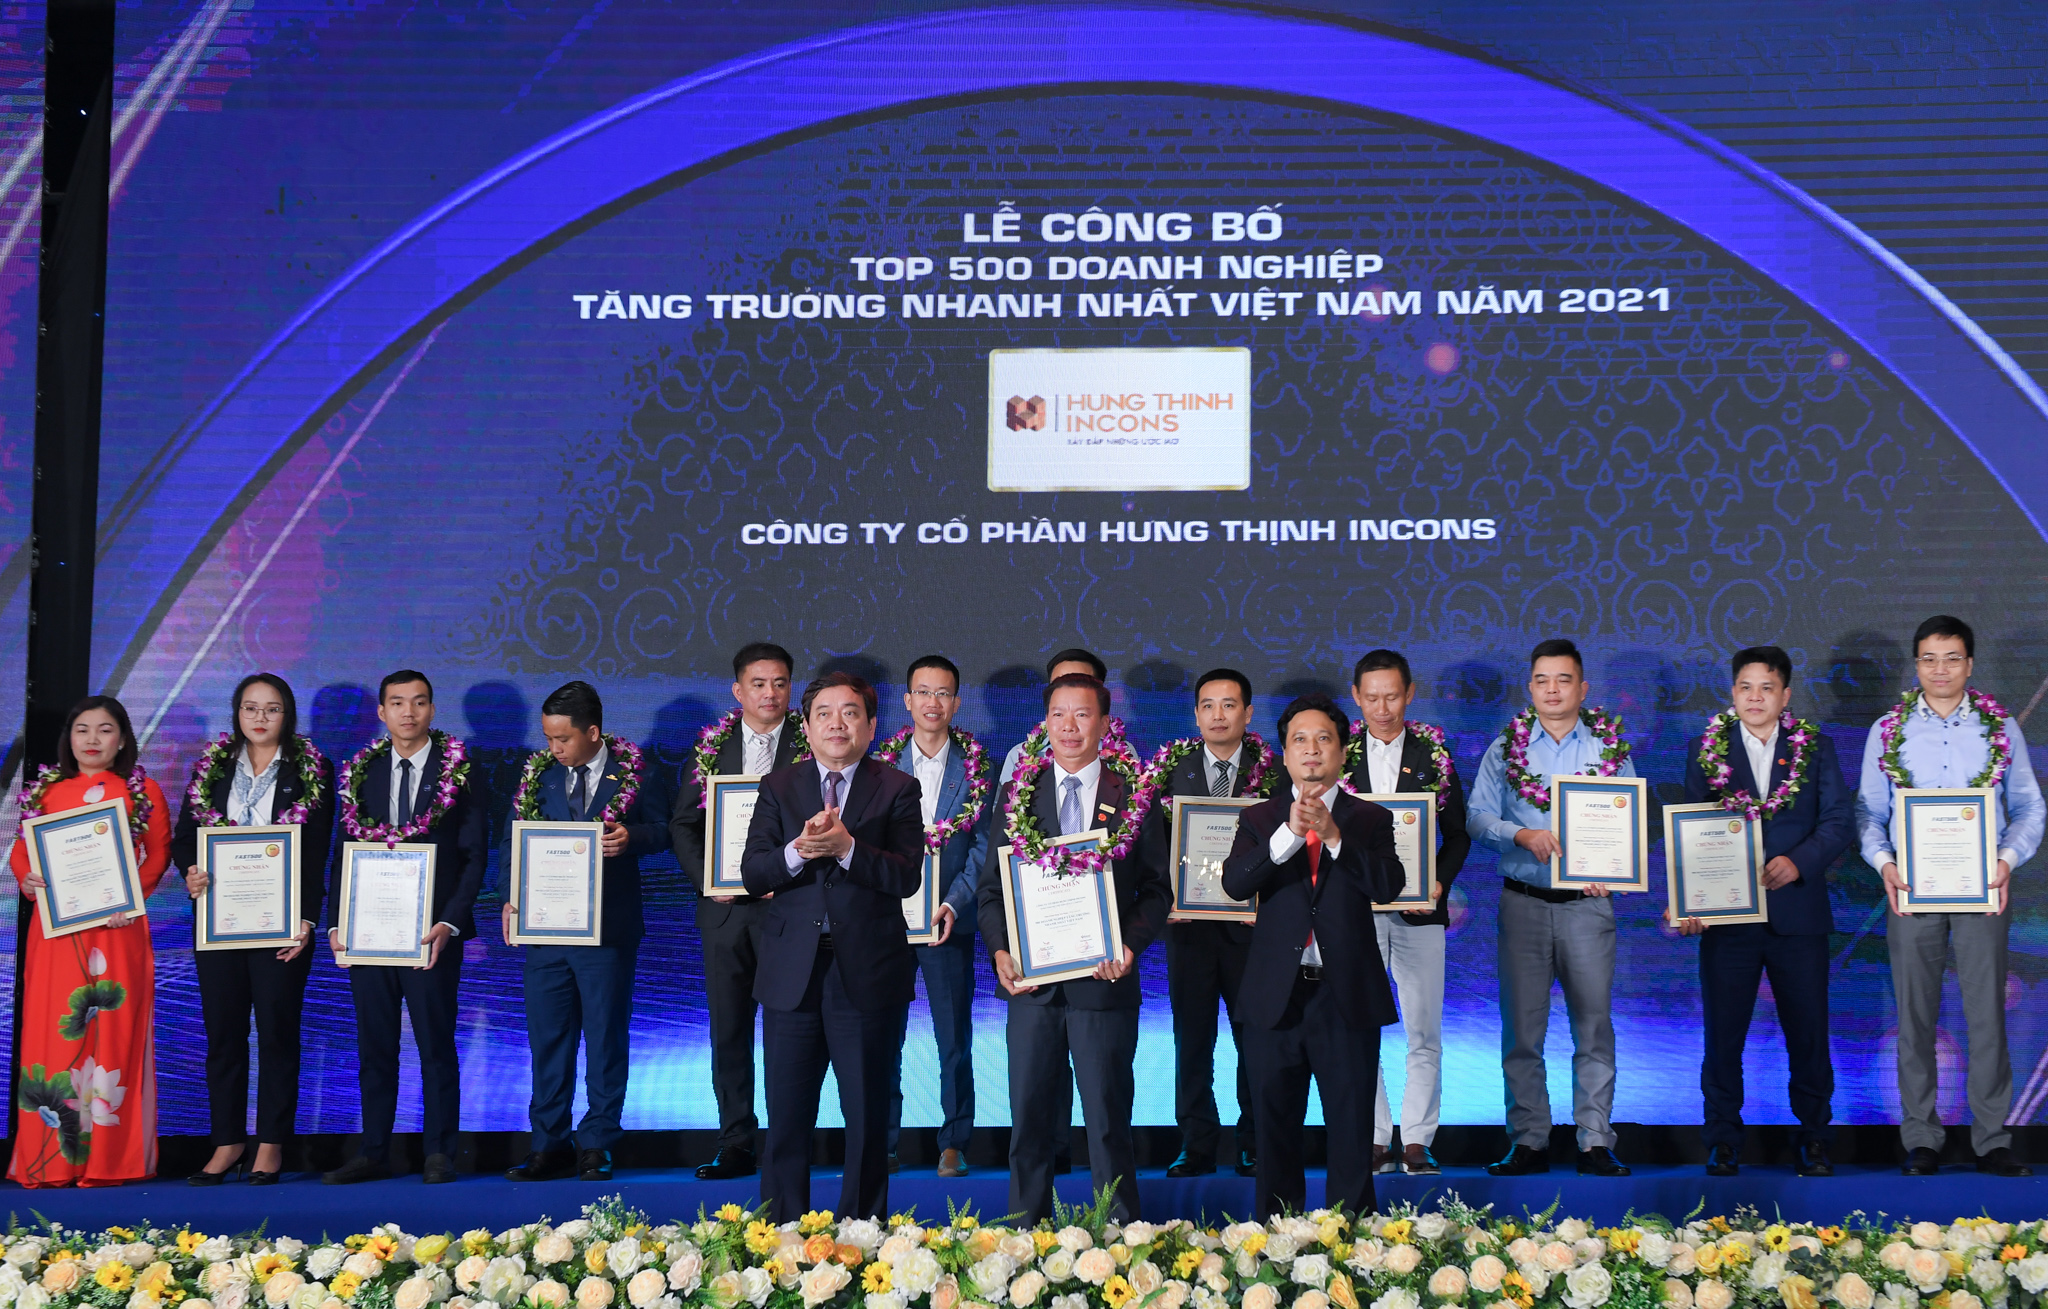 Hưng Thịnh Incons đứng thứ hạng cao trong bảng xếp Top 500 Doanh nghiệp tăng trưởng nhanh nhất Việt Nam 2021